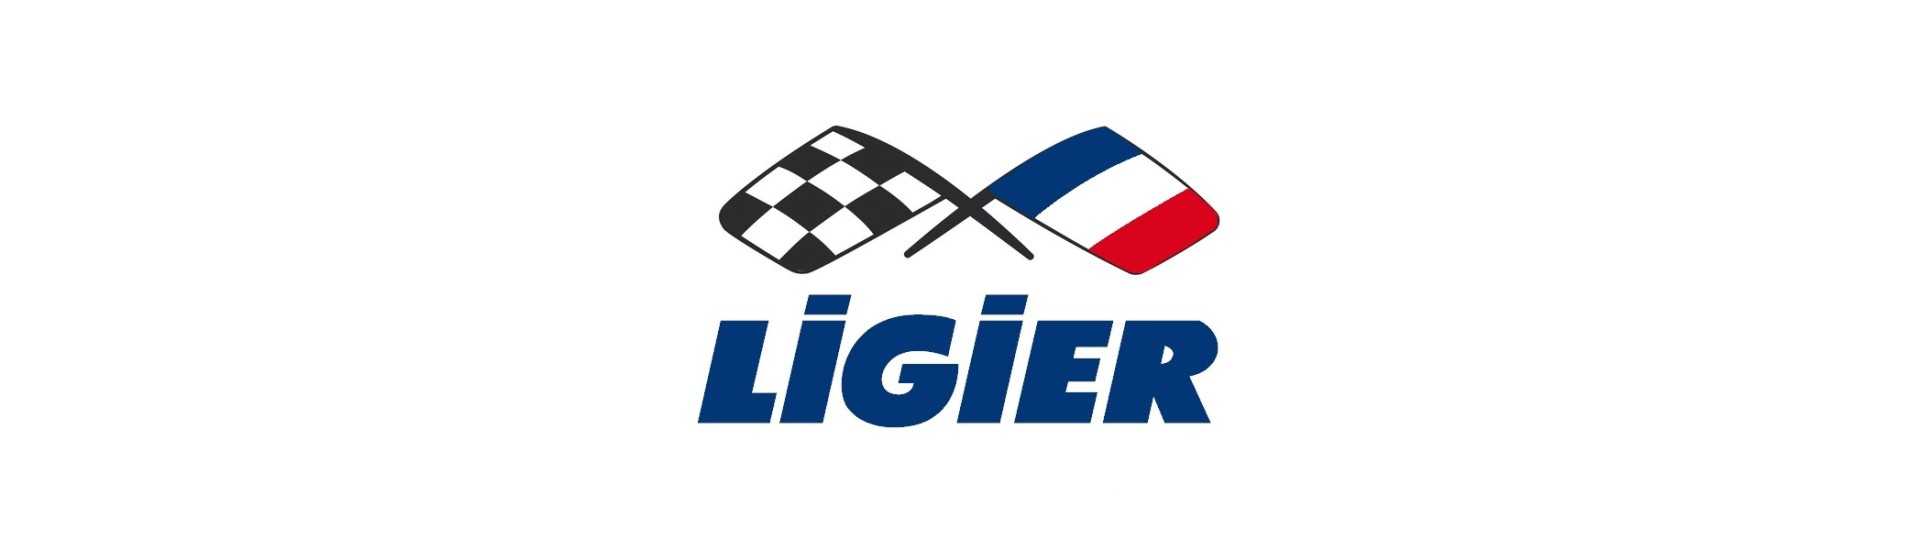 Underhållshäfte till bästa pris för en bil utan körkort Ligier